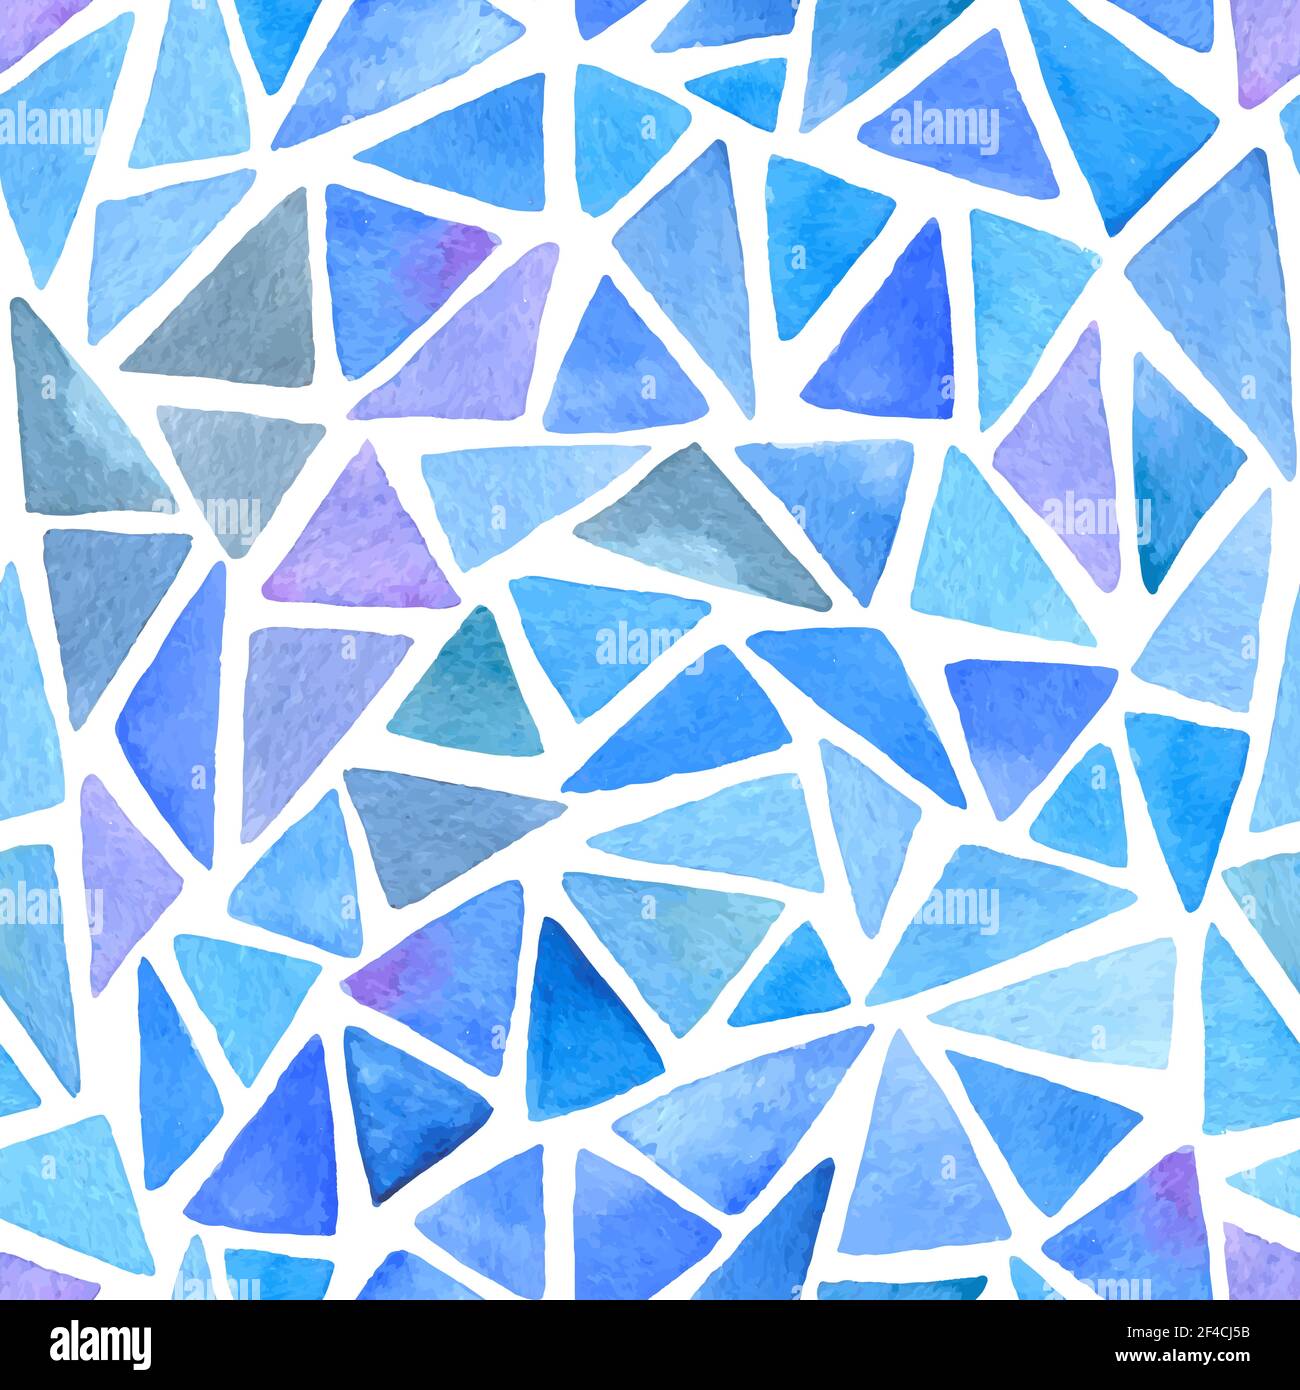 Abstrakter Vektor Aquarell Nahtloses Muster mit blauen und violetten Dreiecken Auf weißem Hintergrund Stock Vektor